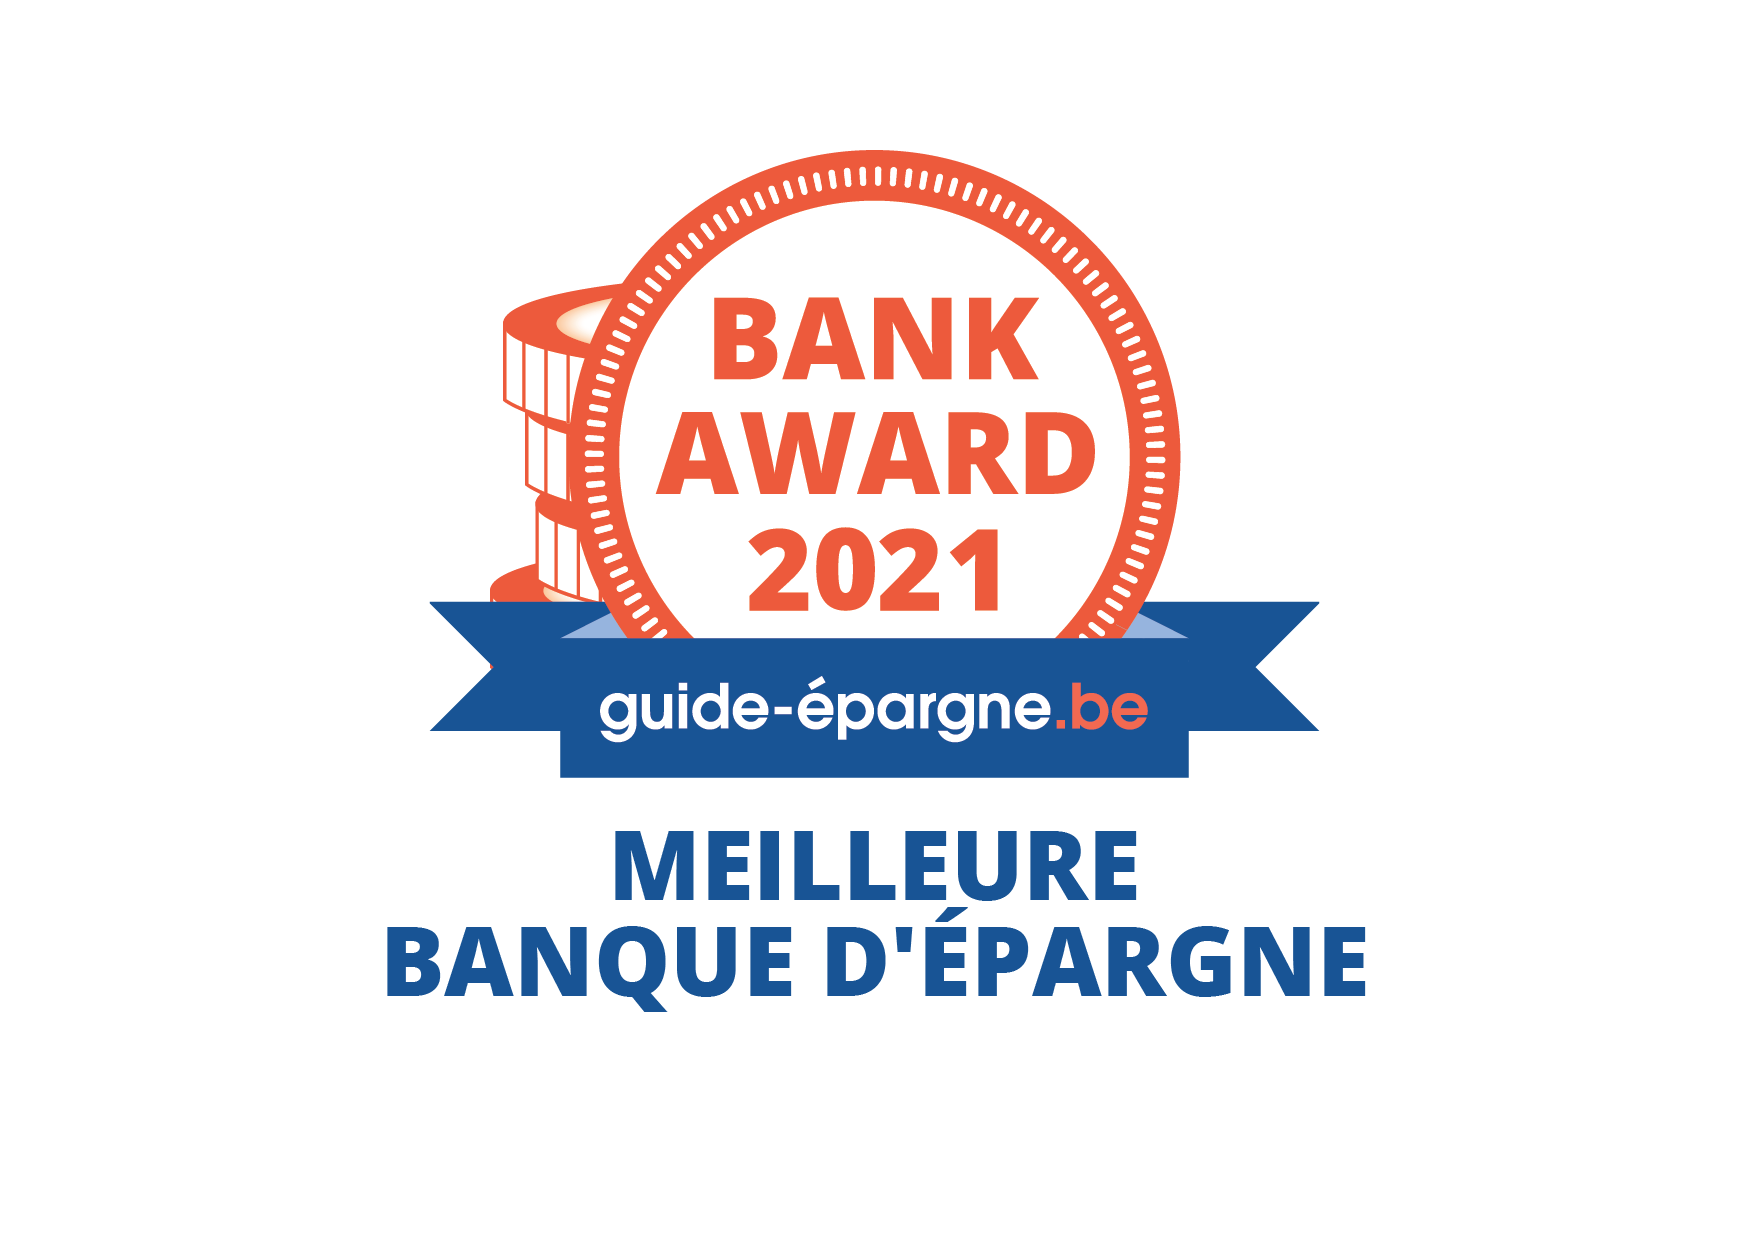 Bank Award 2021 guide-épargne.be - Meilleure banque d'épargne